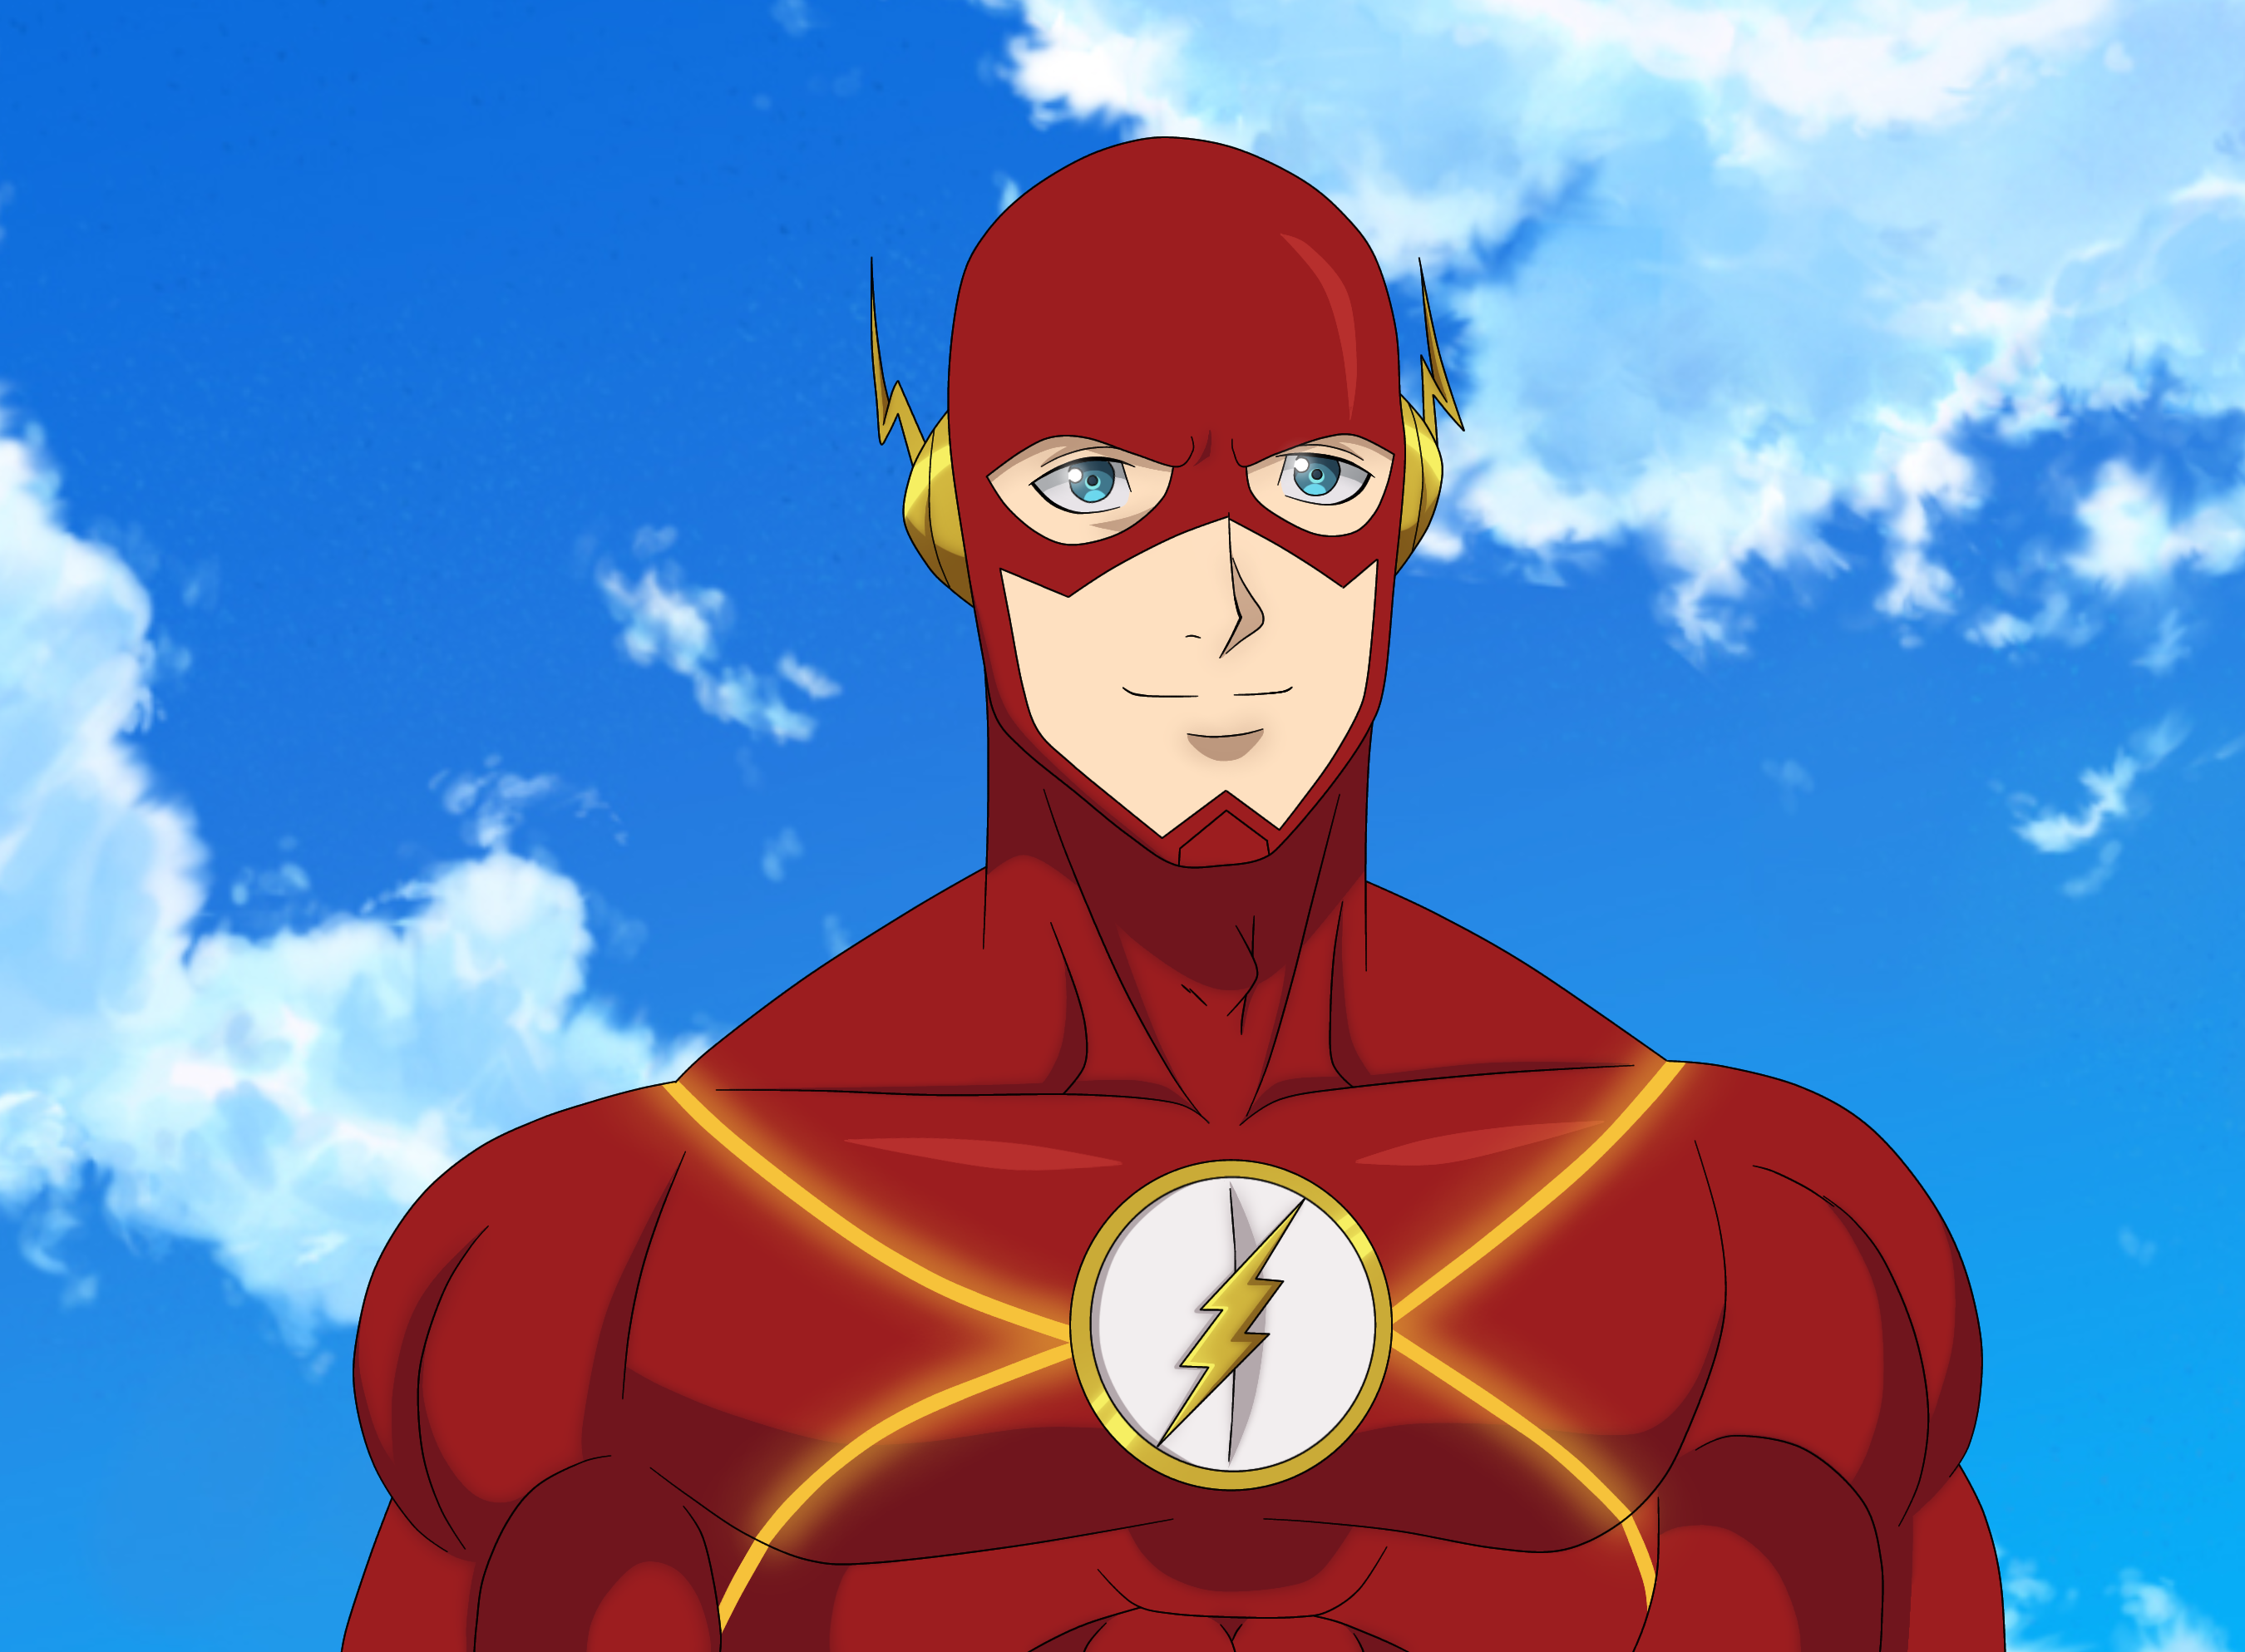 Barry Allen (Flash) by MeliodasGremory21 on DeviantArt